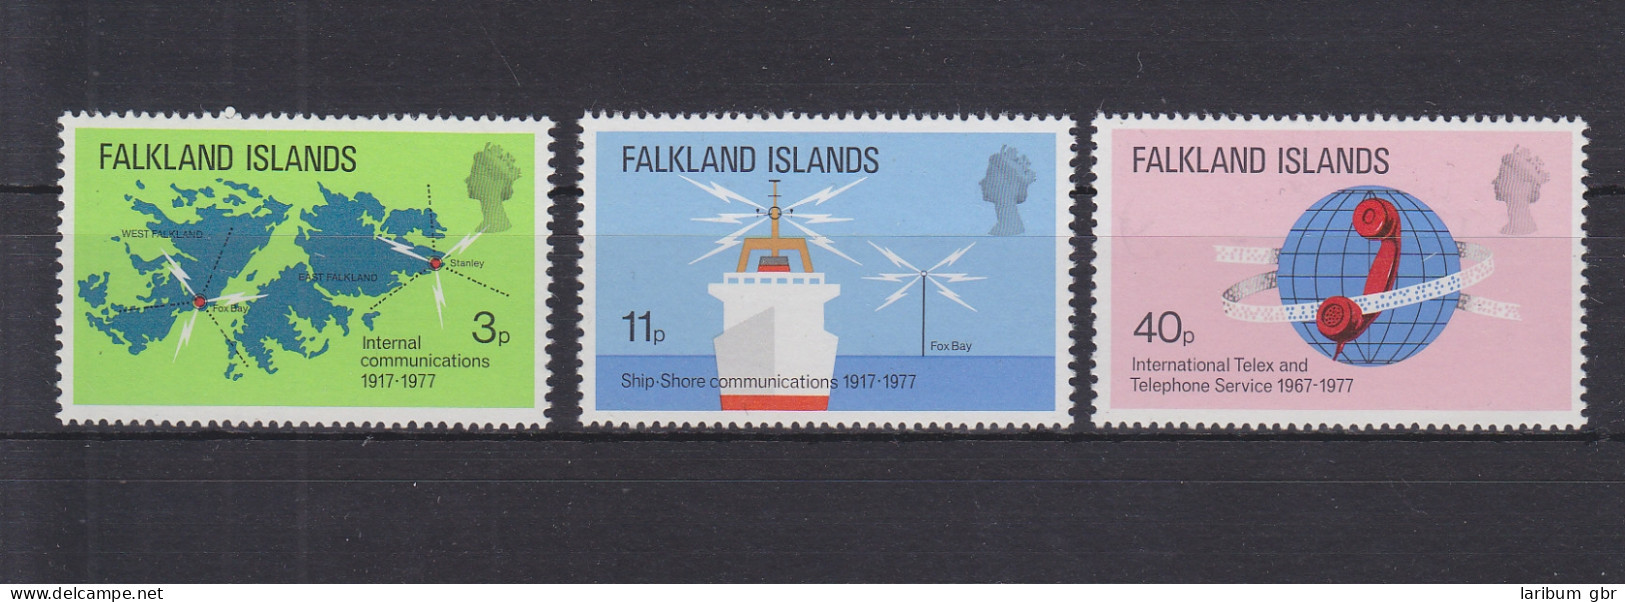 Falklandinseln 252-254 Postfrisch Fernmeldewesen,MNH #GE236 - Falklandinseln